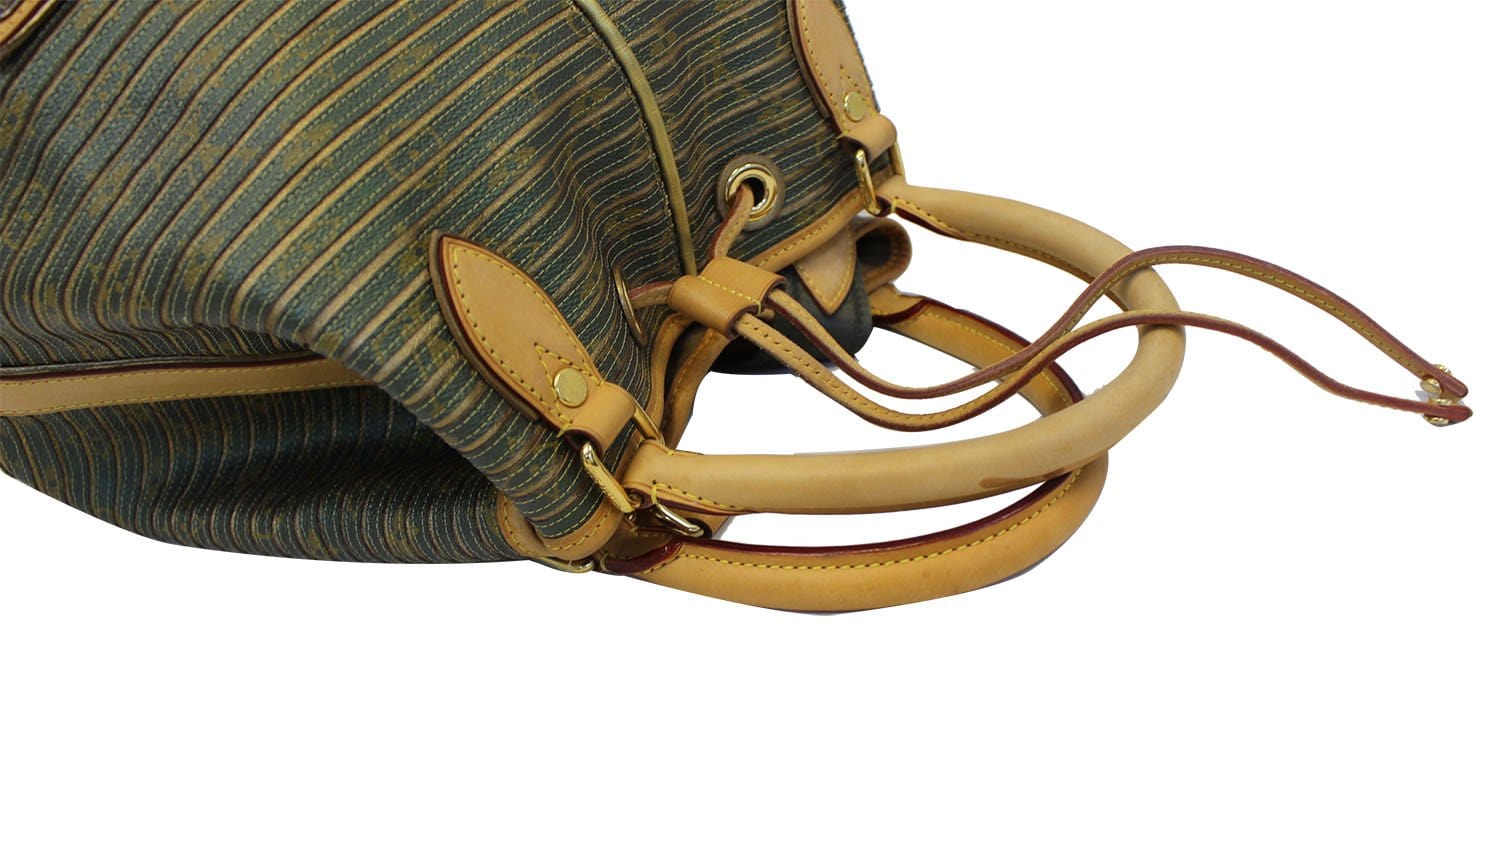 Louis Vuitton Neo Shoulder Bag Limited Edition Monogram Eden